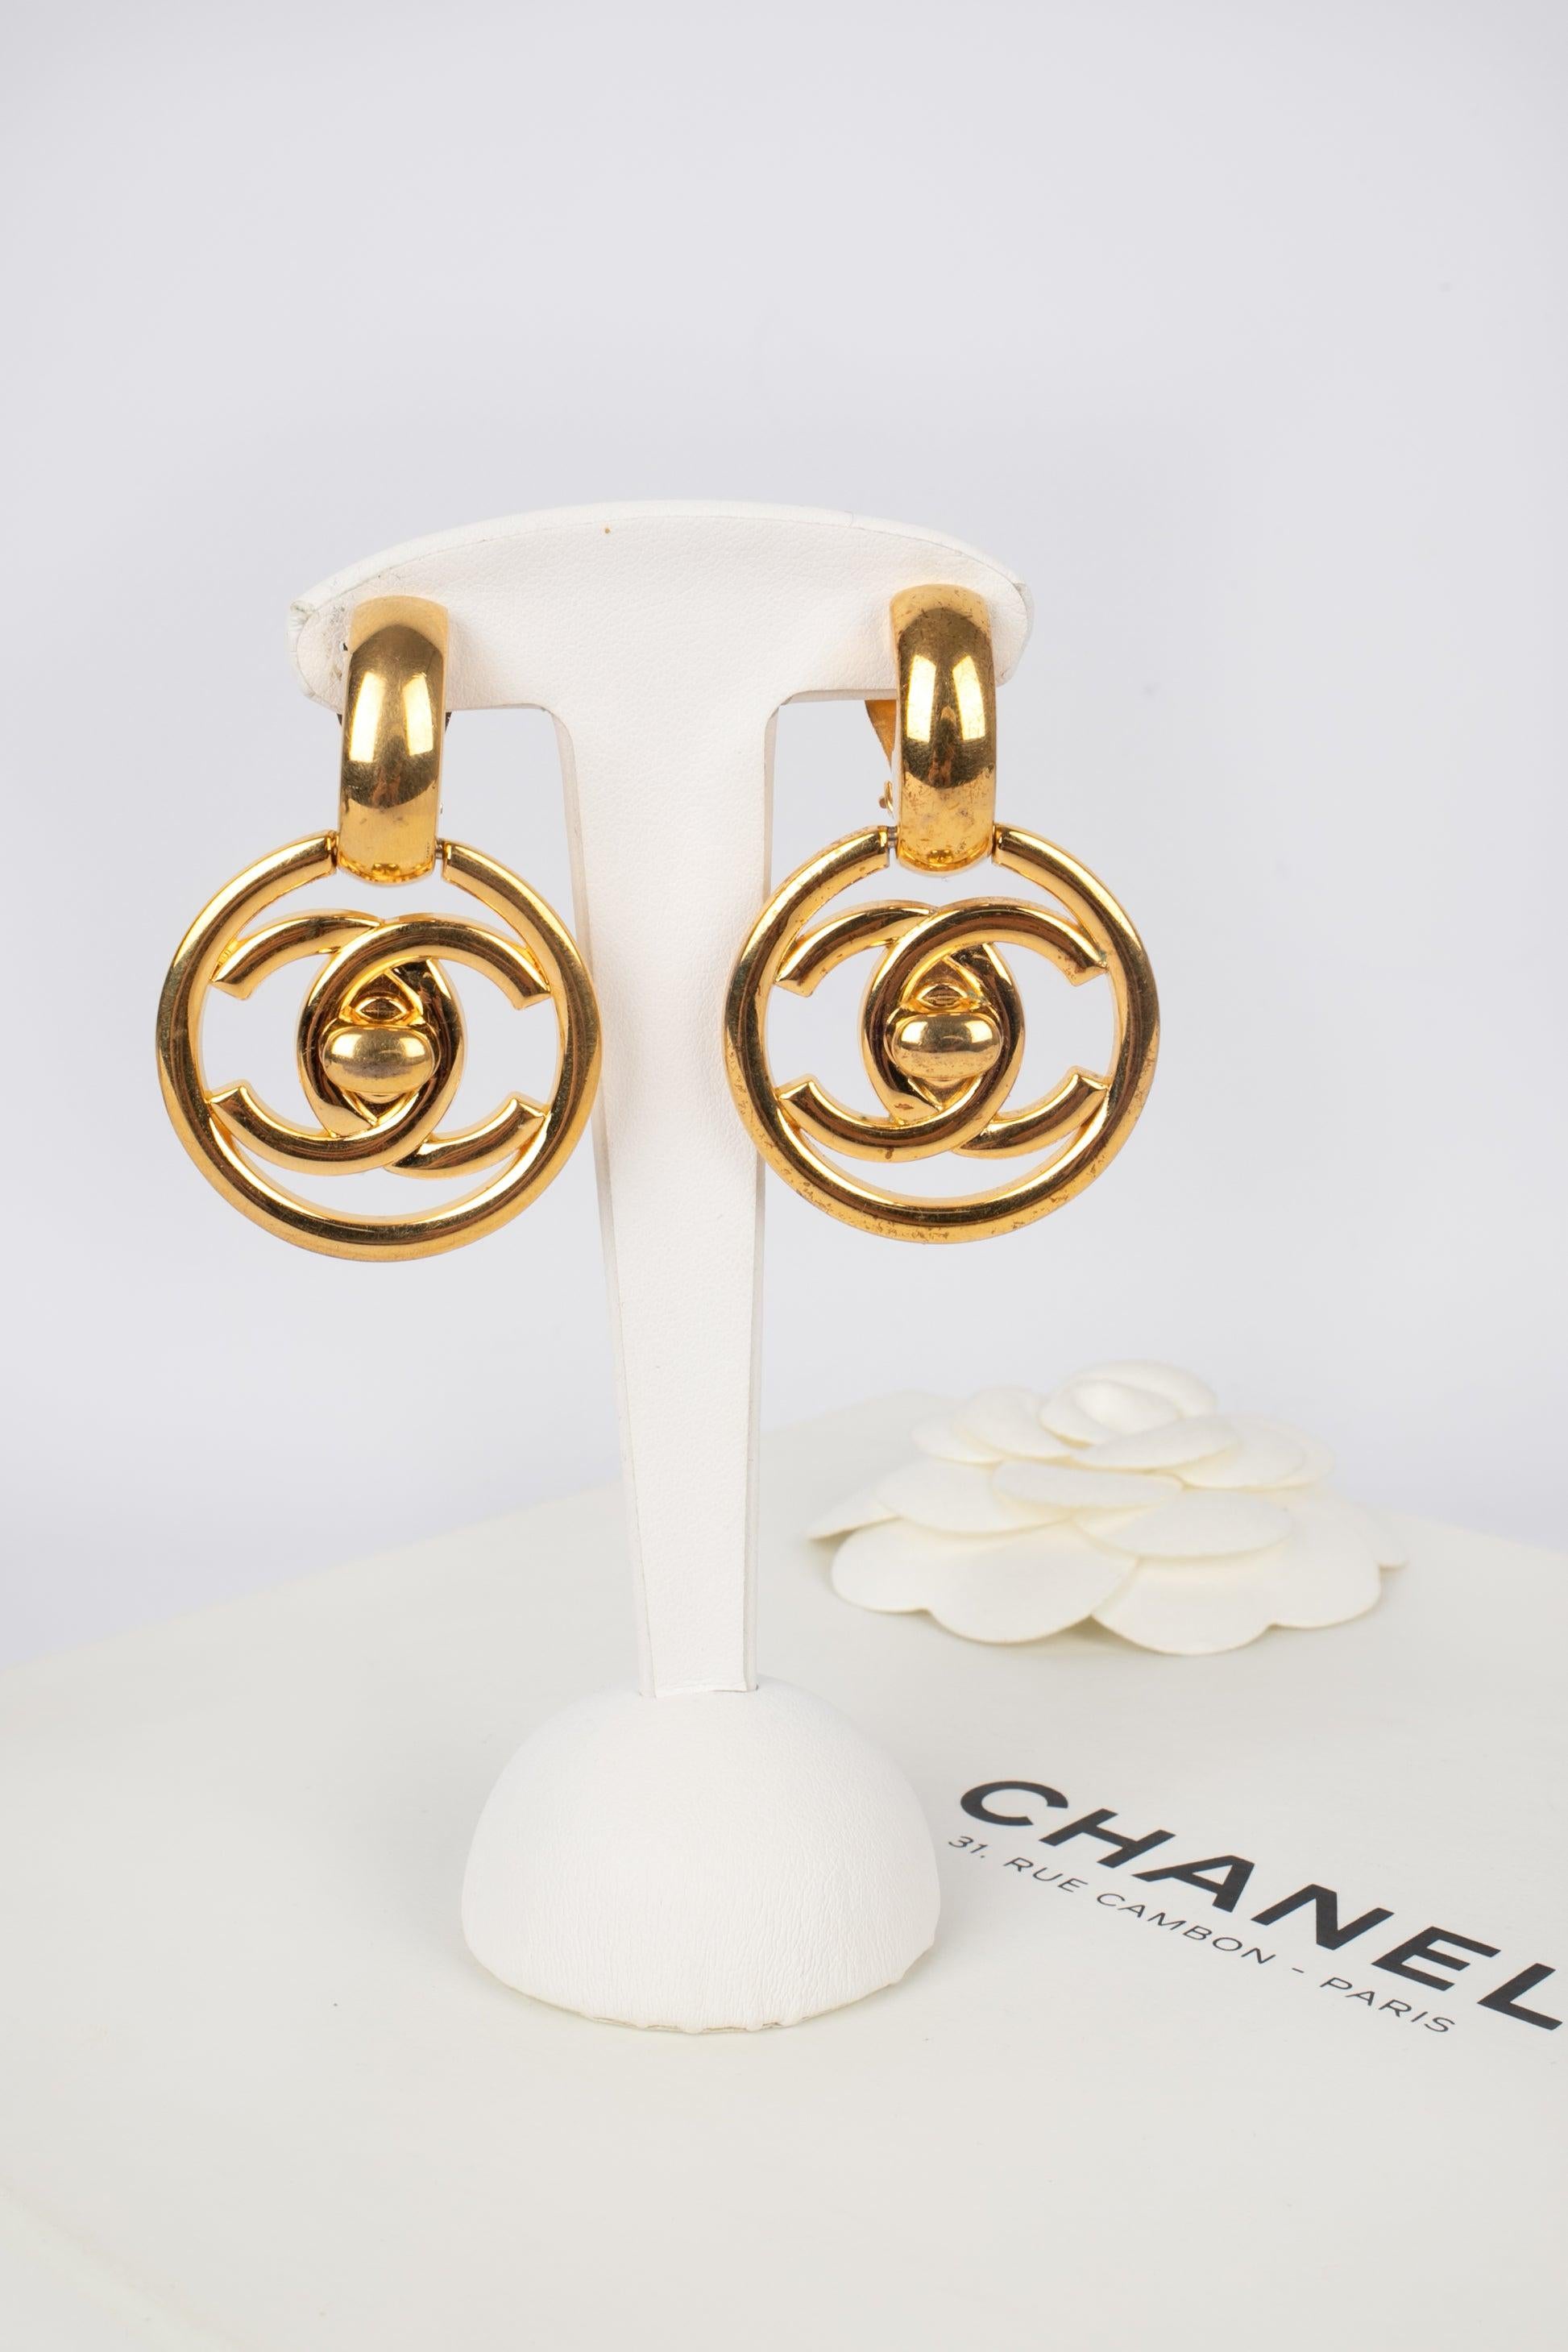 Chanel Golden Metal Turnlock Earrings, 1997 For Sale 1